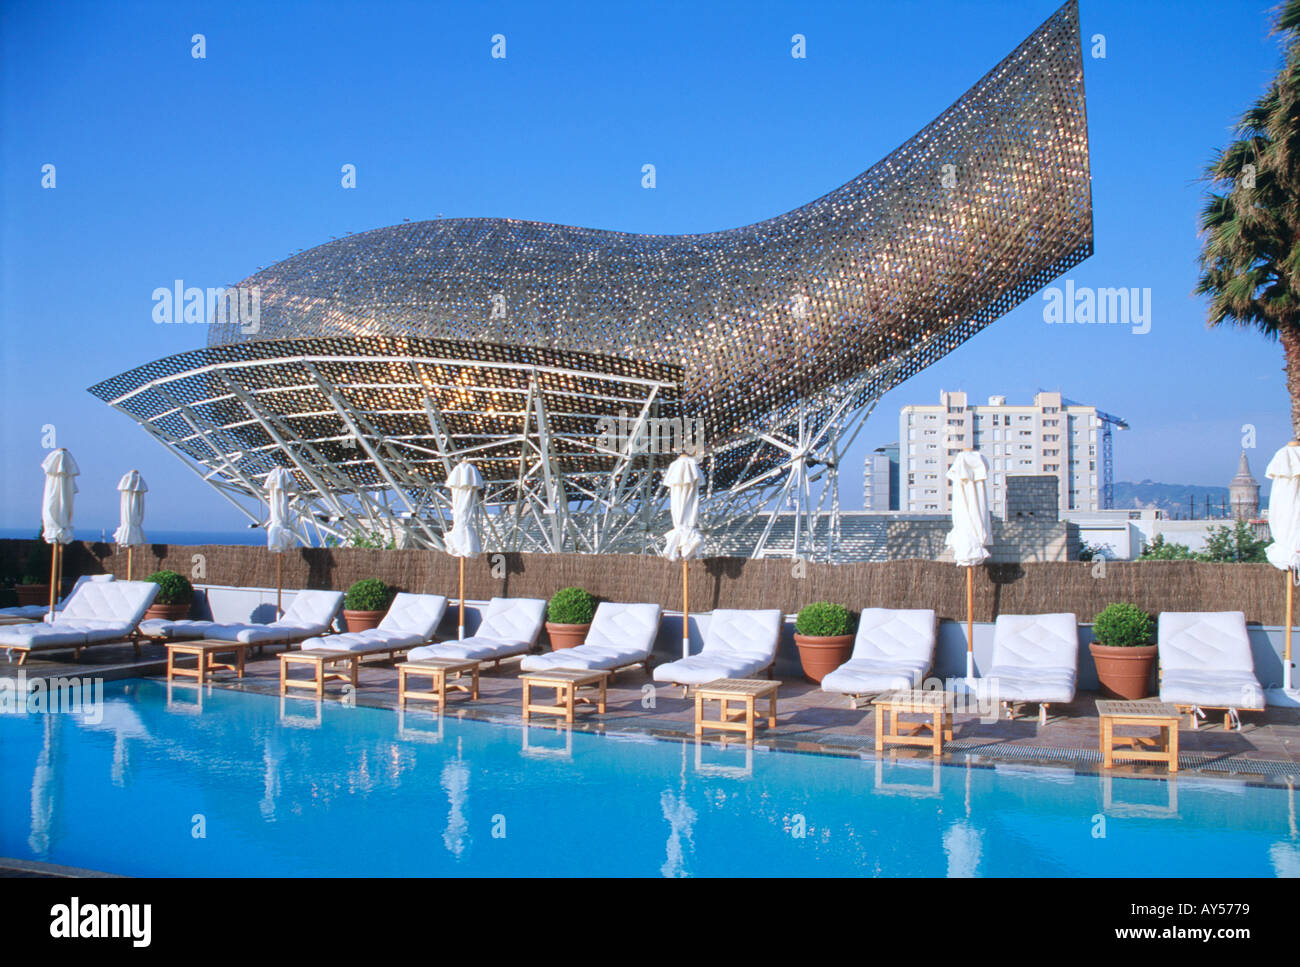 La piscine de l'hôtel Art Frank Gehry's Fish Sculpture, Barcelone Espagne Banque D'Images